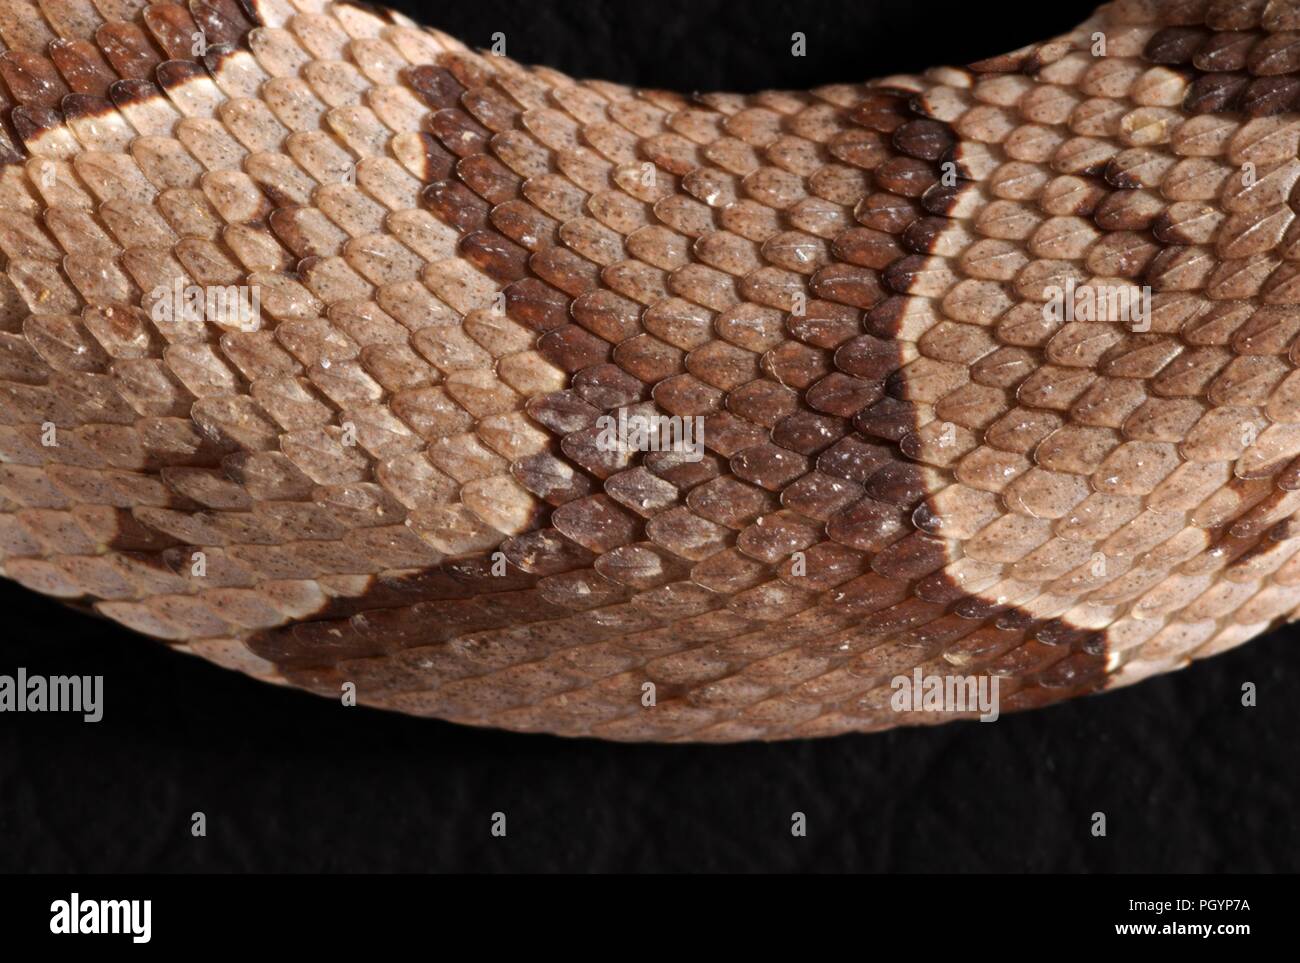 Fotografia che mostra una vista ravvicinata del marrone e beige e scalato la superficie della pelle di un bambino, velenosa, Southern copperhead snake (Agkistrodon contortrix) Immagine cortesia CDC/James Gathany, 2008. () Foto Stock